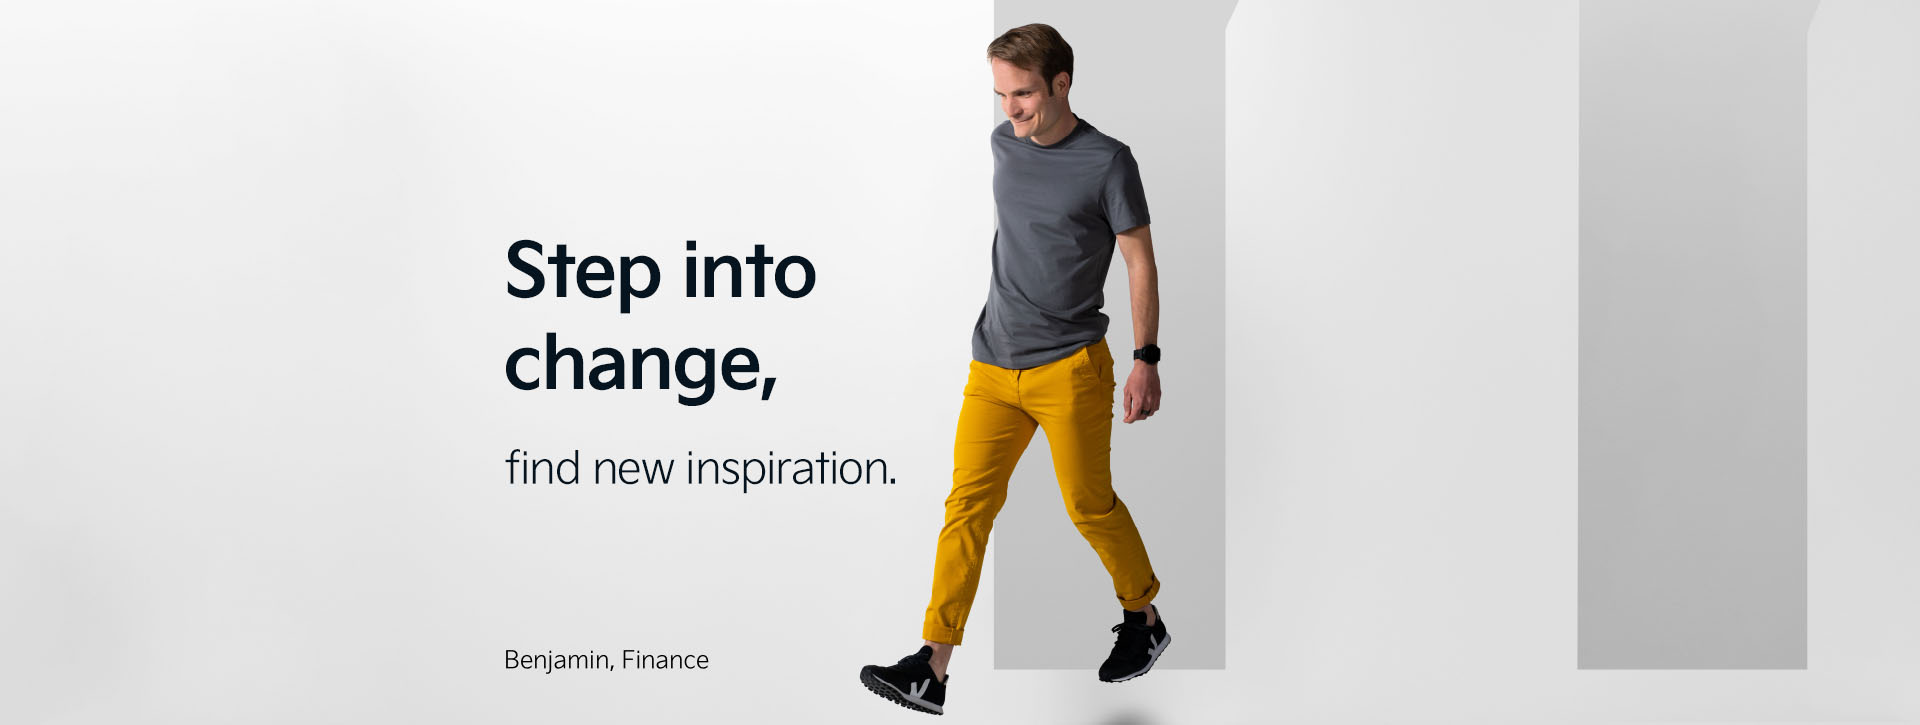 Benjamin aus unserer Finanzabteilung macht einen Schritt nach vorne. Hinter ihm steht der Buchstabe "M". Neben ihm finden wir die Aussage "Step into change - find new inspiration".